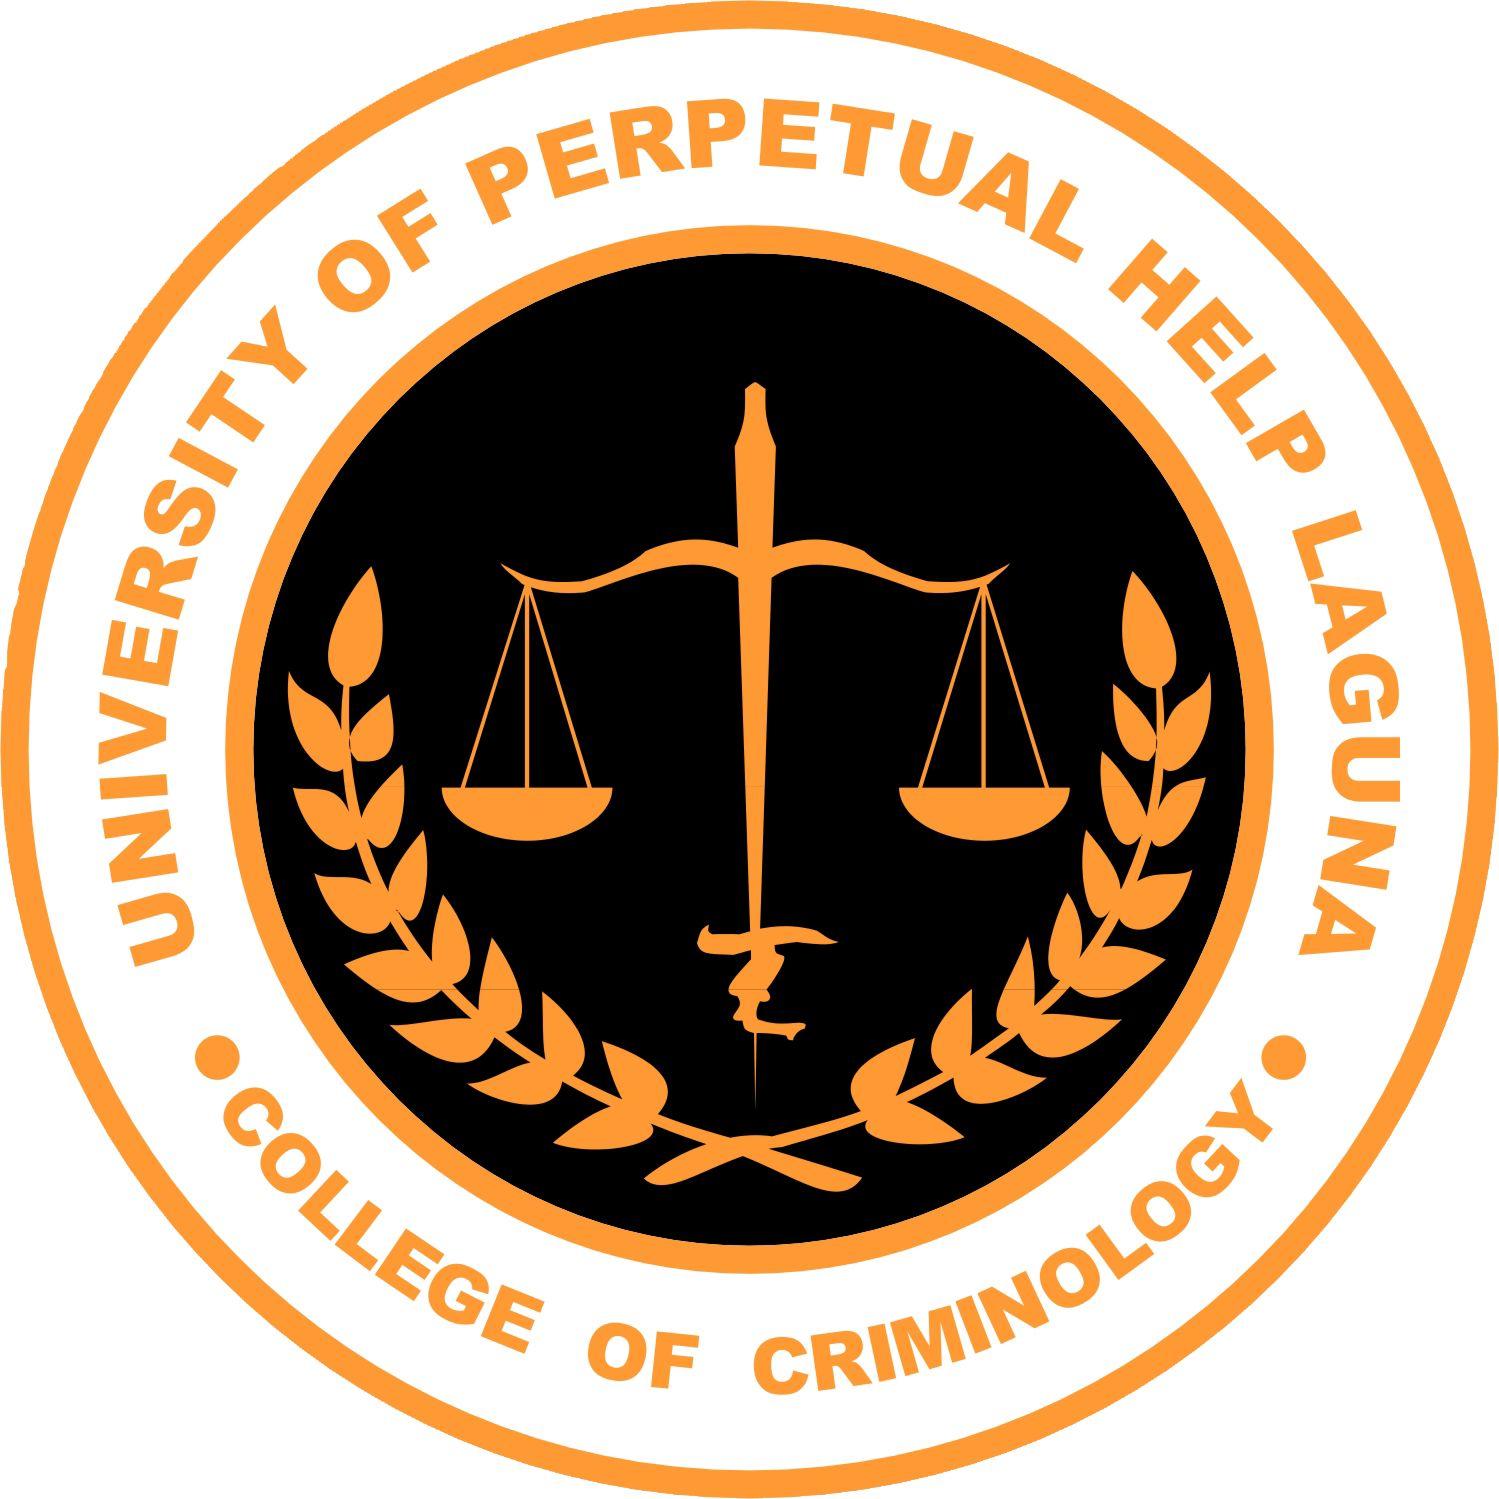 Criminology Logo - UPHSL - College of Criminology